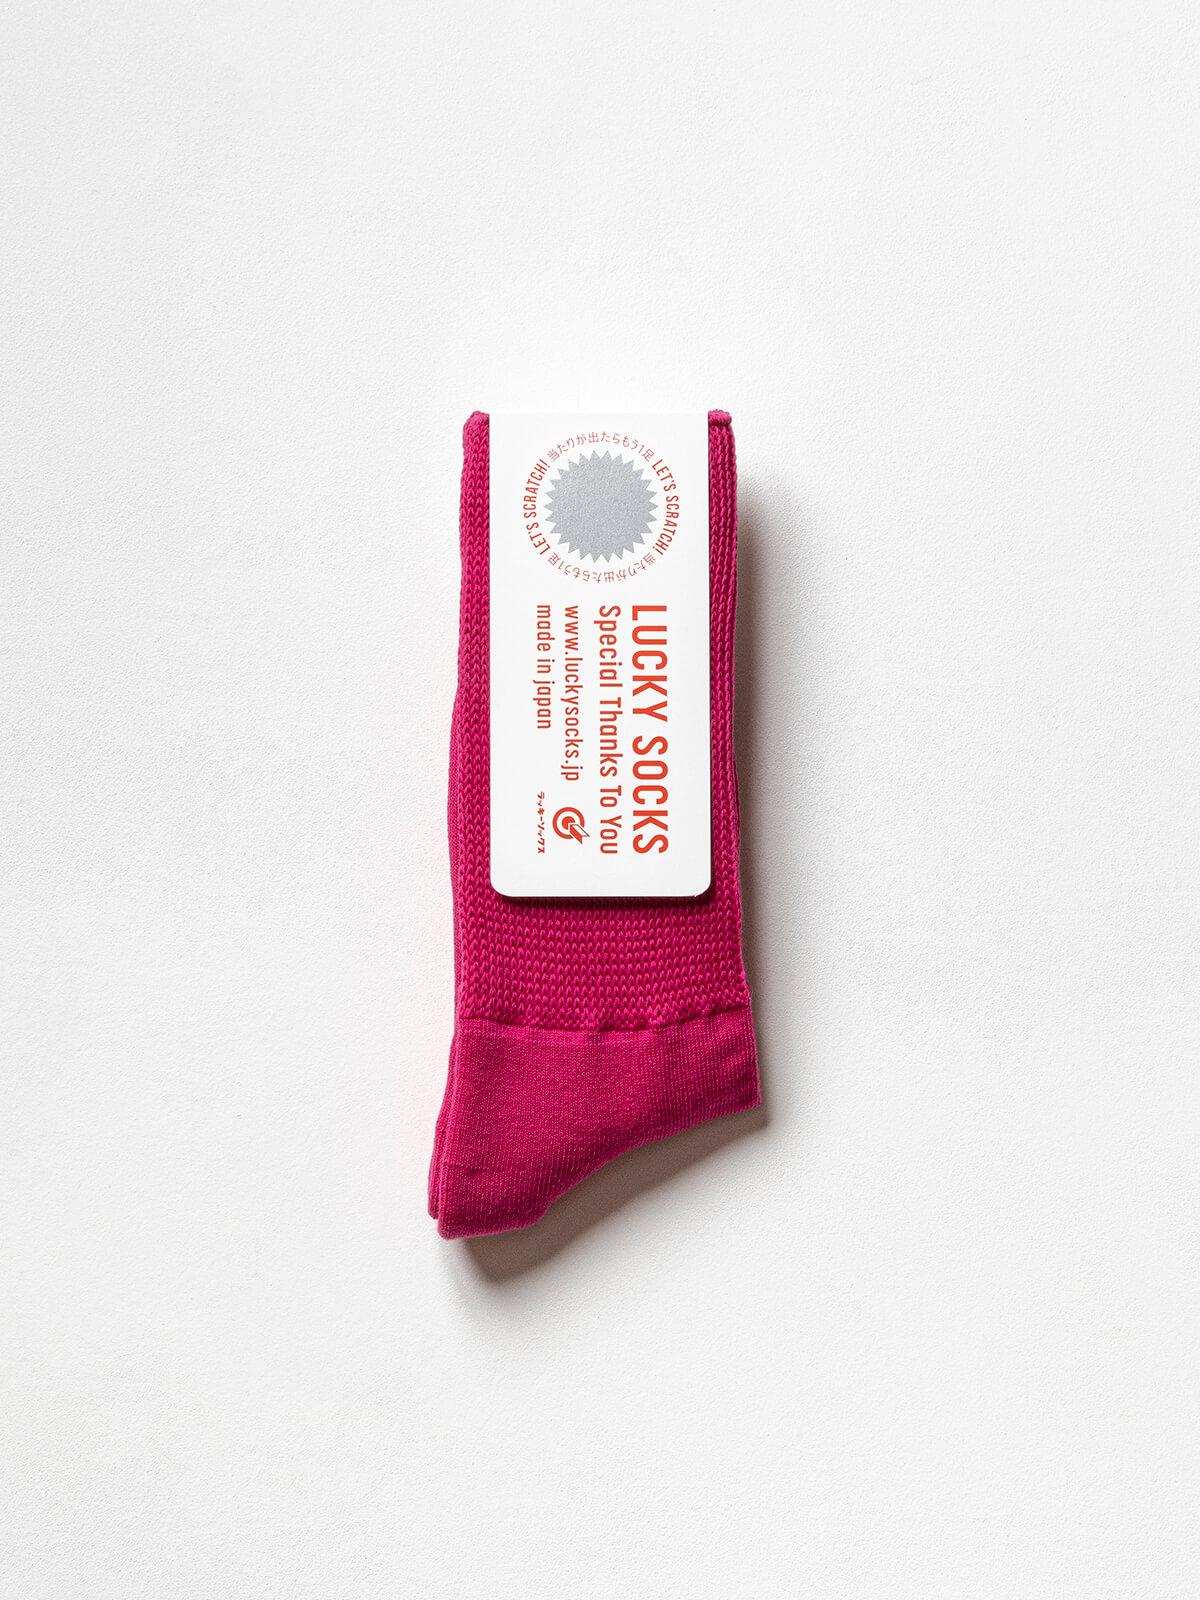 当たりつきギフト専用靴下のLUCKY SOCKS（ラッキーソックス）のRelax Pile Socks（リラックスパイルソックス）のピンク_1